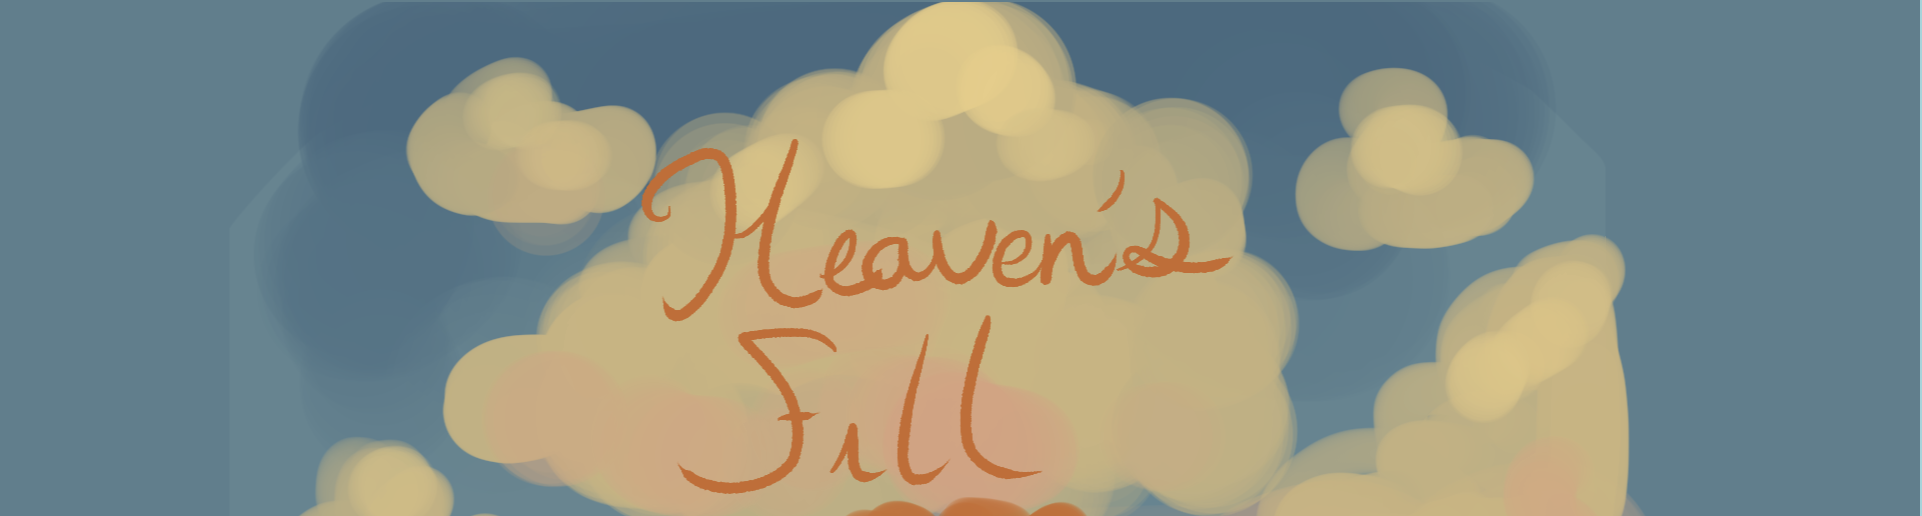 Heaven's Fill